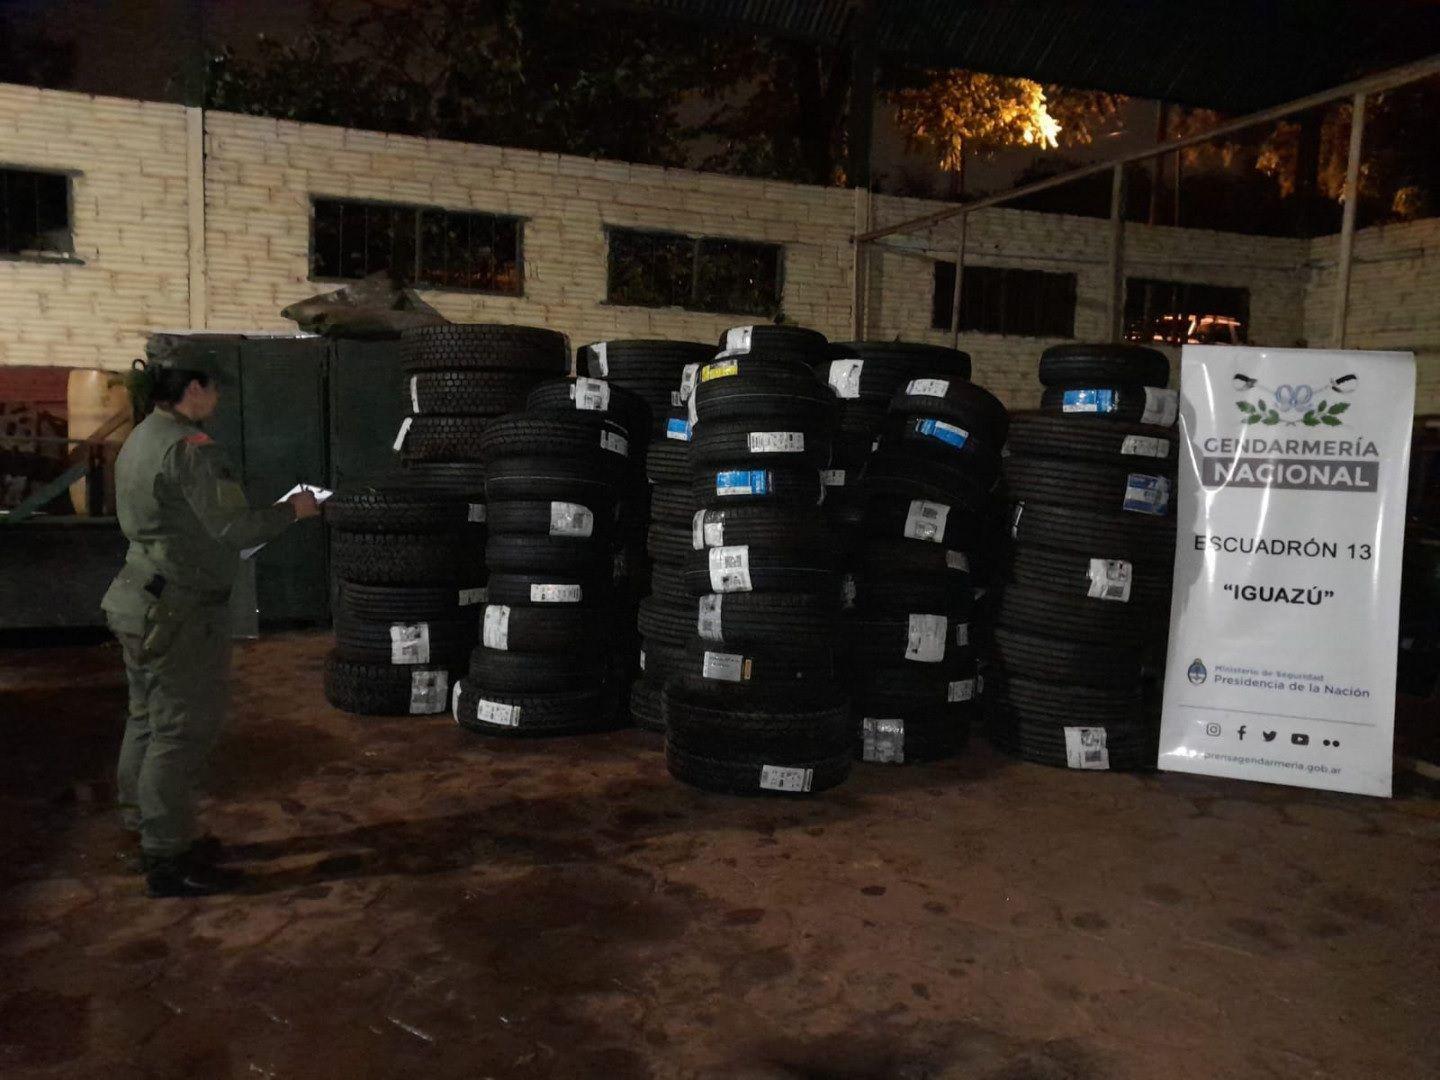 Maacutes cubiertas de contrabando fueron incautadas por Gendarmeriacutea